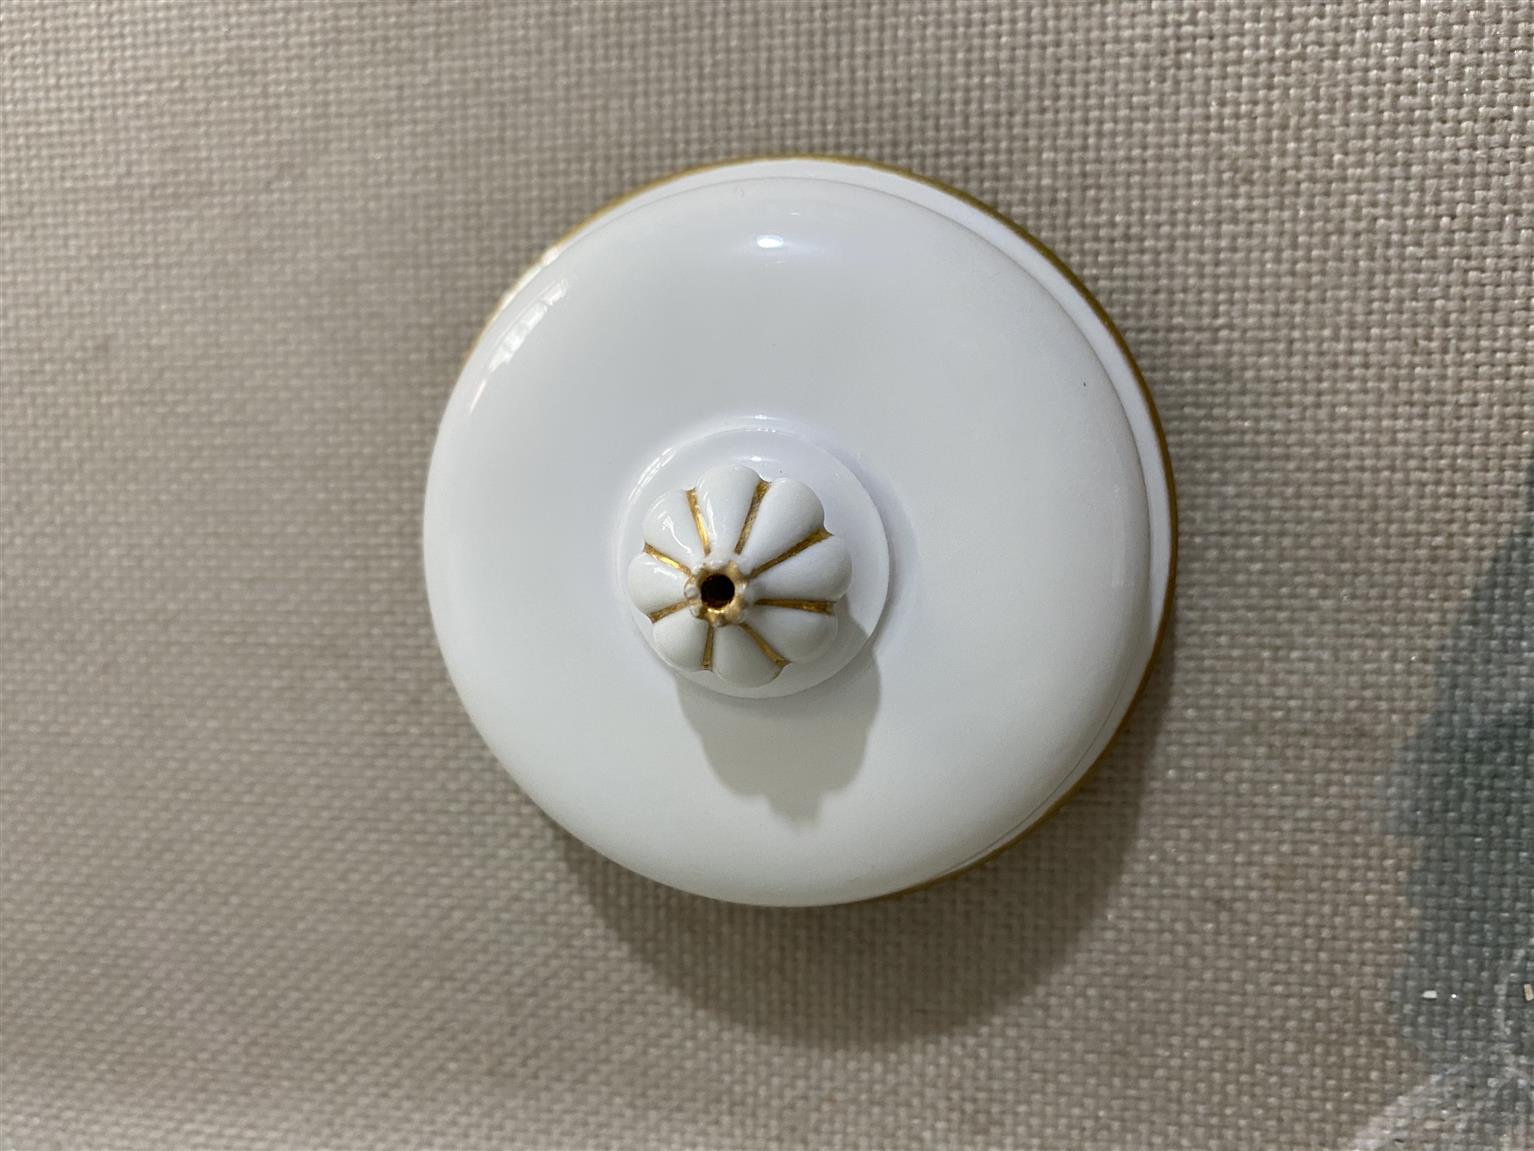 四川瓷器修复流程 南京美瓷工艺品有限公司